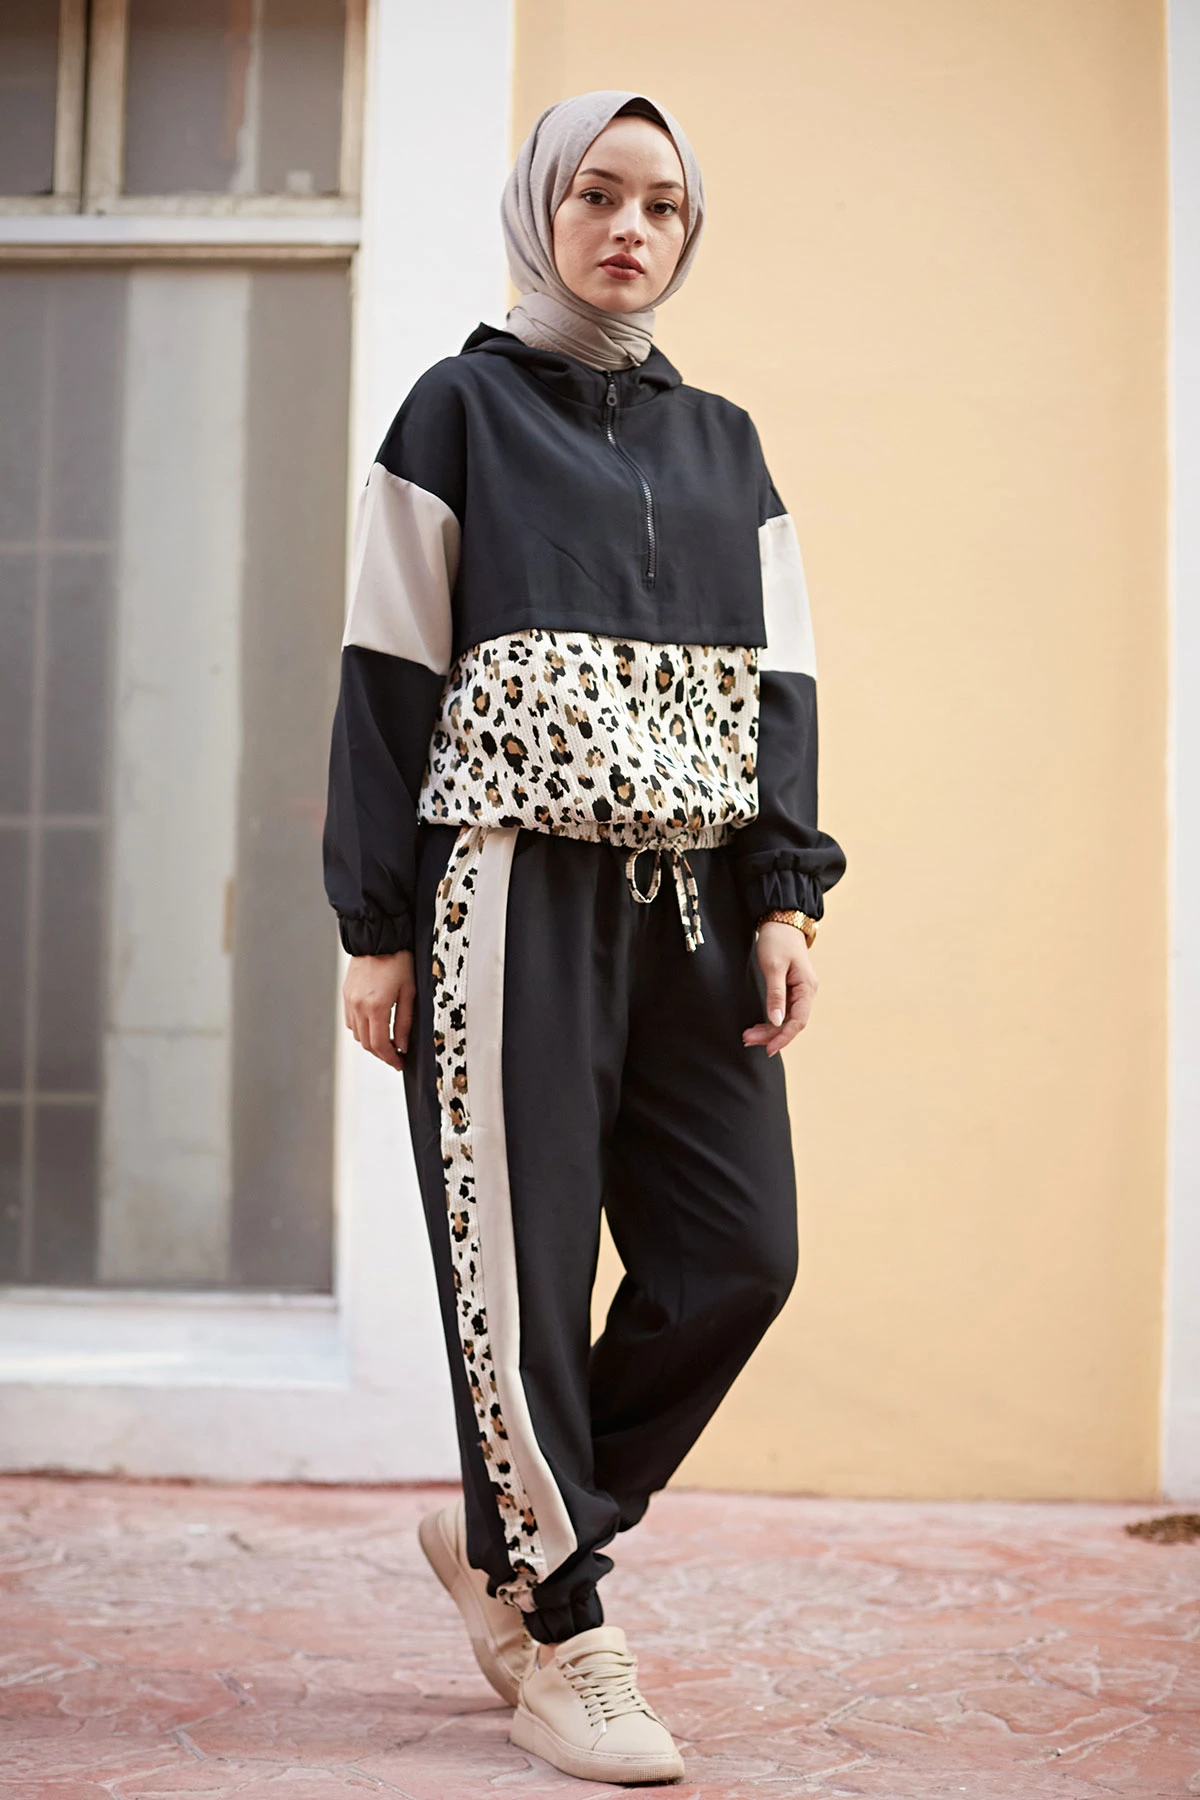 Женский трикотажный костюм с леопардовым принтом, мусульманская одежда, абайя, хиджаб, мусульманские платья, модель 2021, 2021